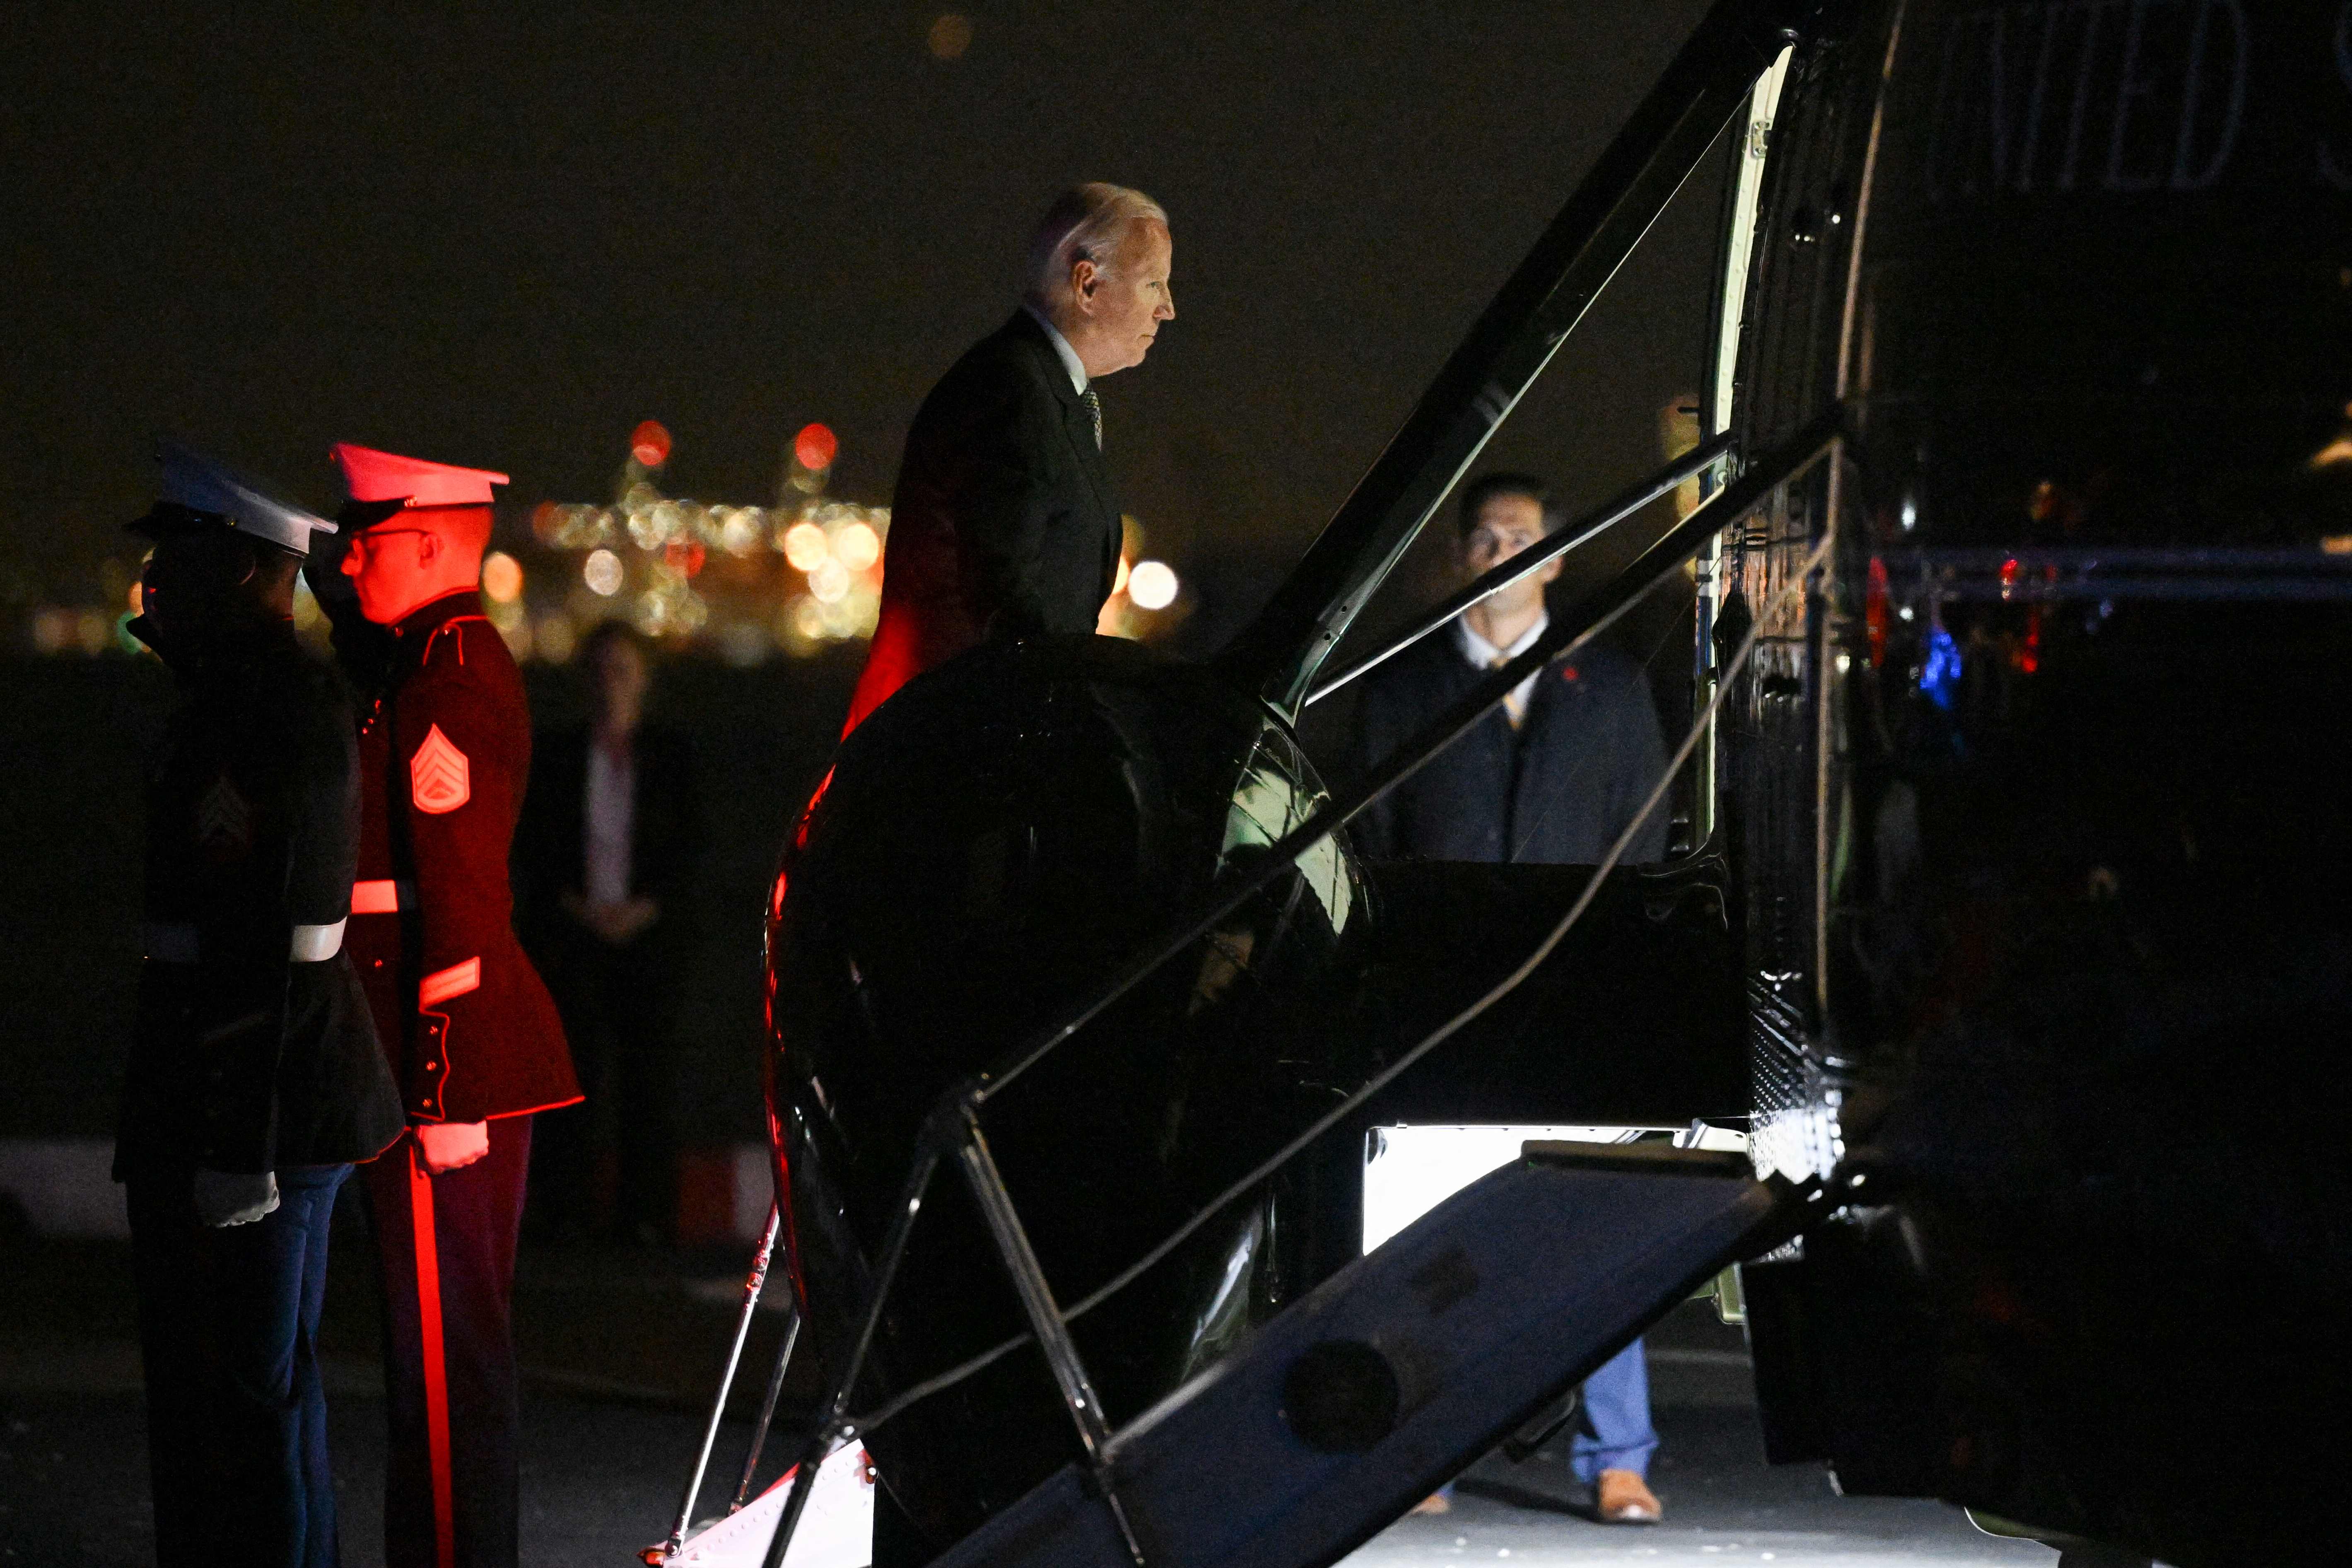 El presidente Joe Biden aborda el Marine One antes de despegar de la zona de aterrizaje de Wall Street en Nueva York el 6 de octubre de 2022